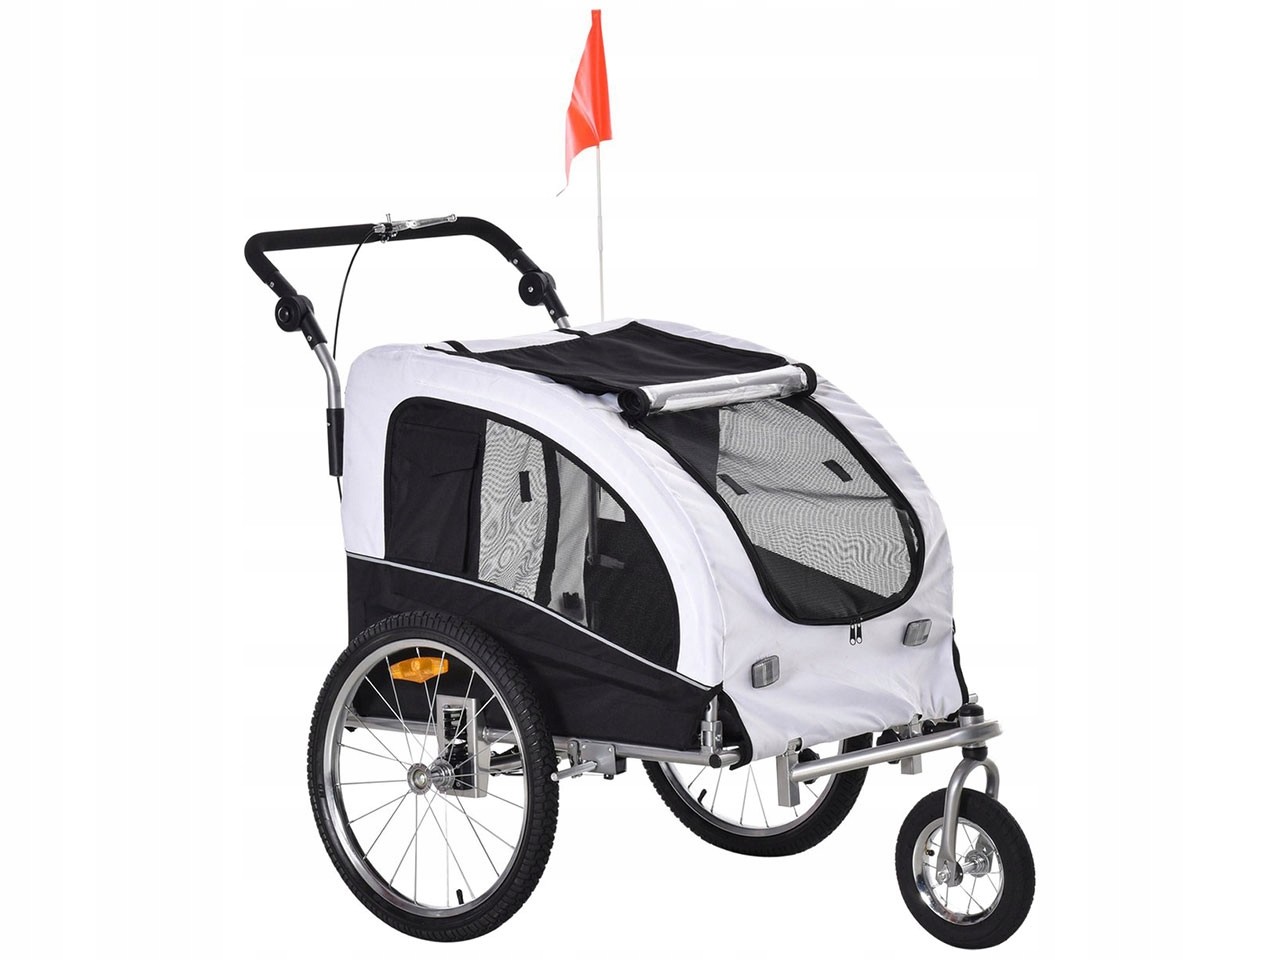 Cyklistický vozík/kočárek pro psy Pawhut 5663-1290, bílo-černý A